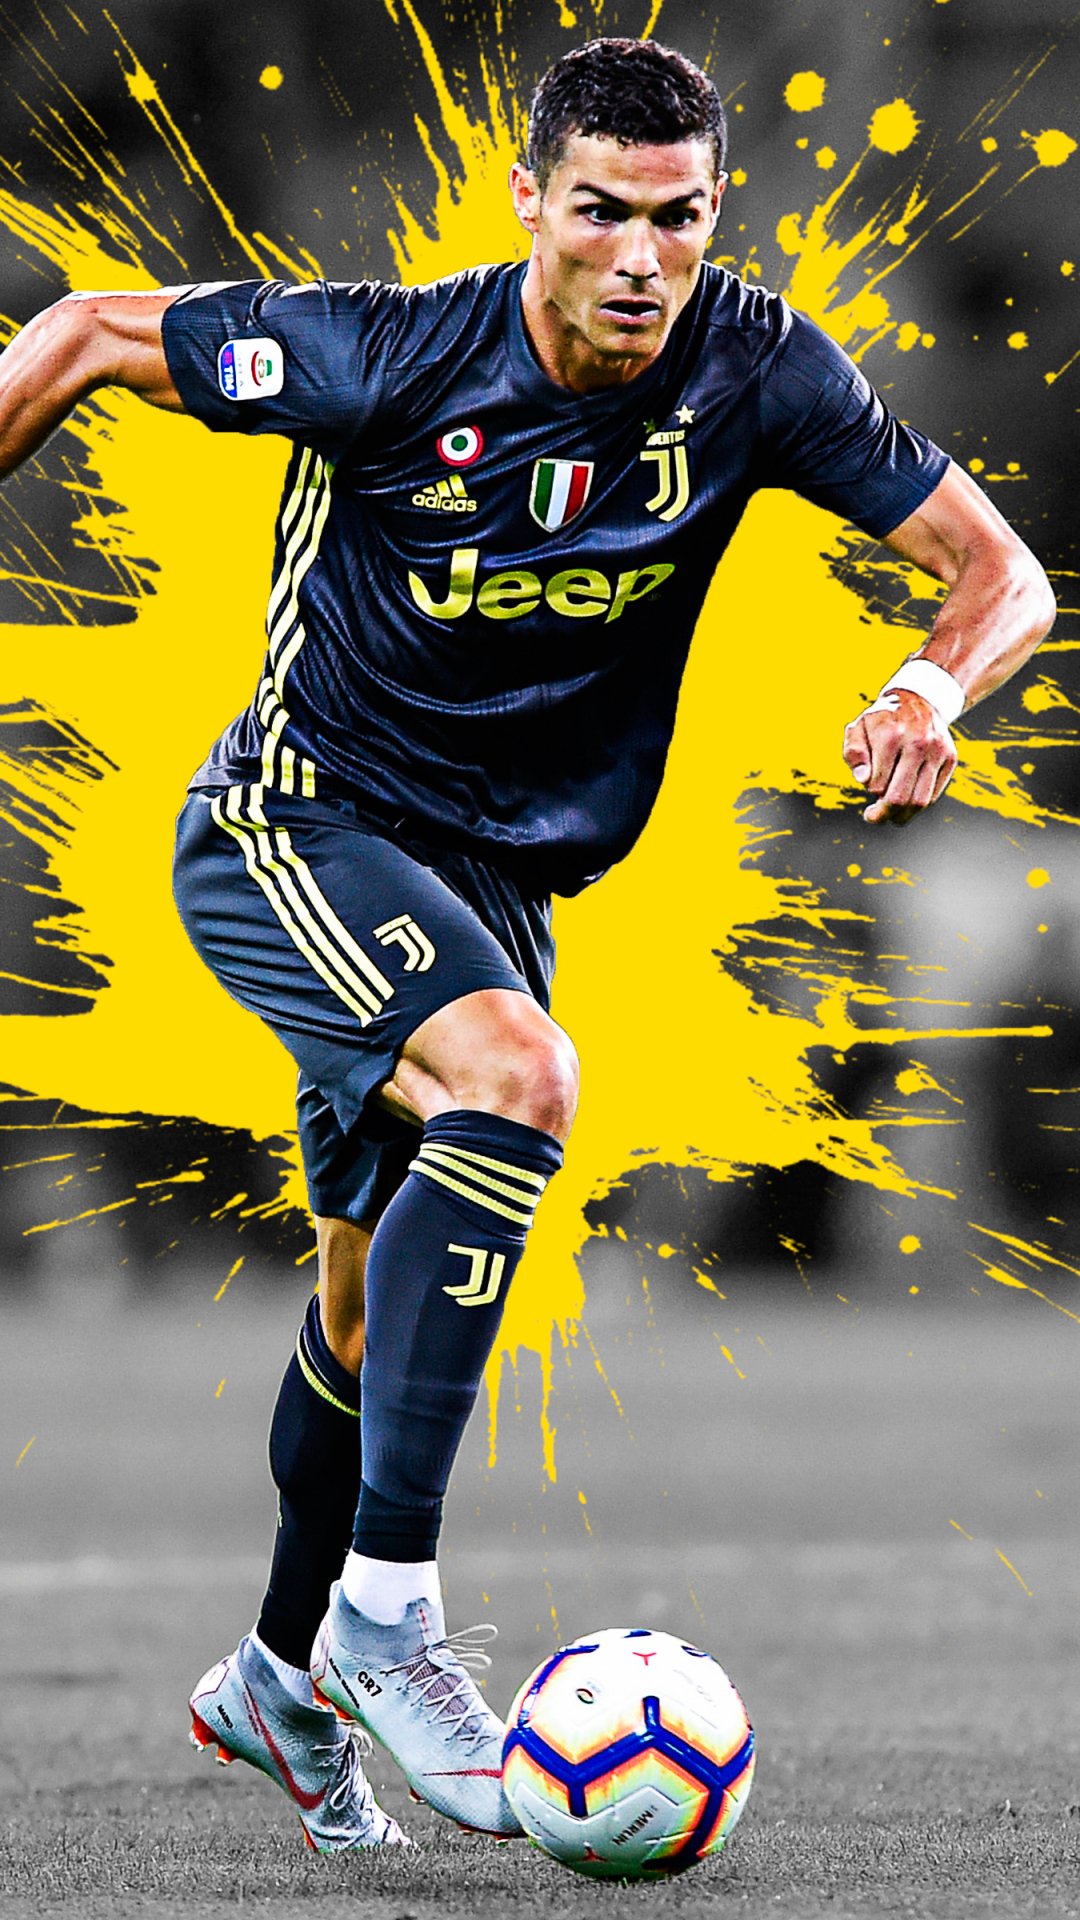 Sports/Cristiano Ronaldo (1080x1920) Wallpaper ID: 767950 - Mobile Abyss